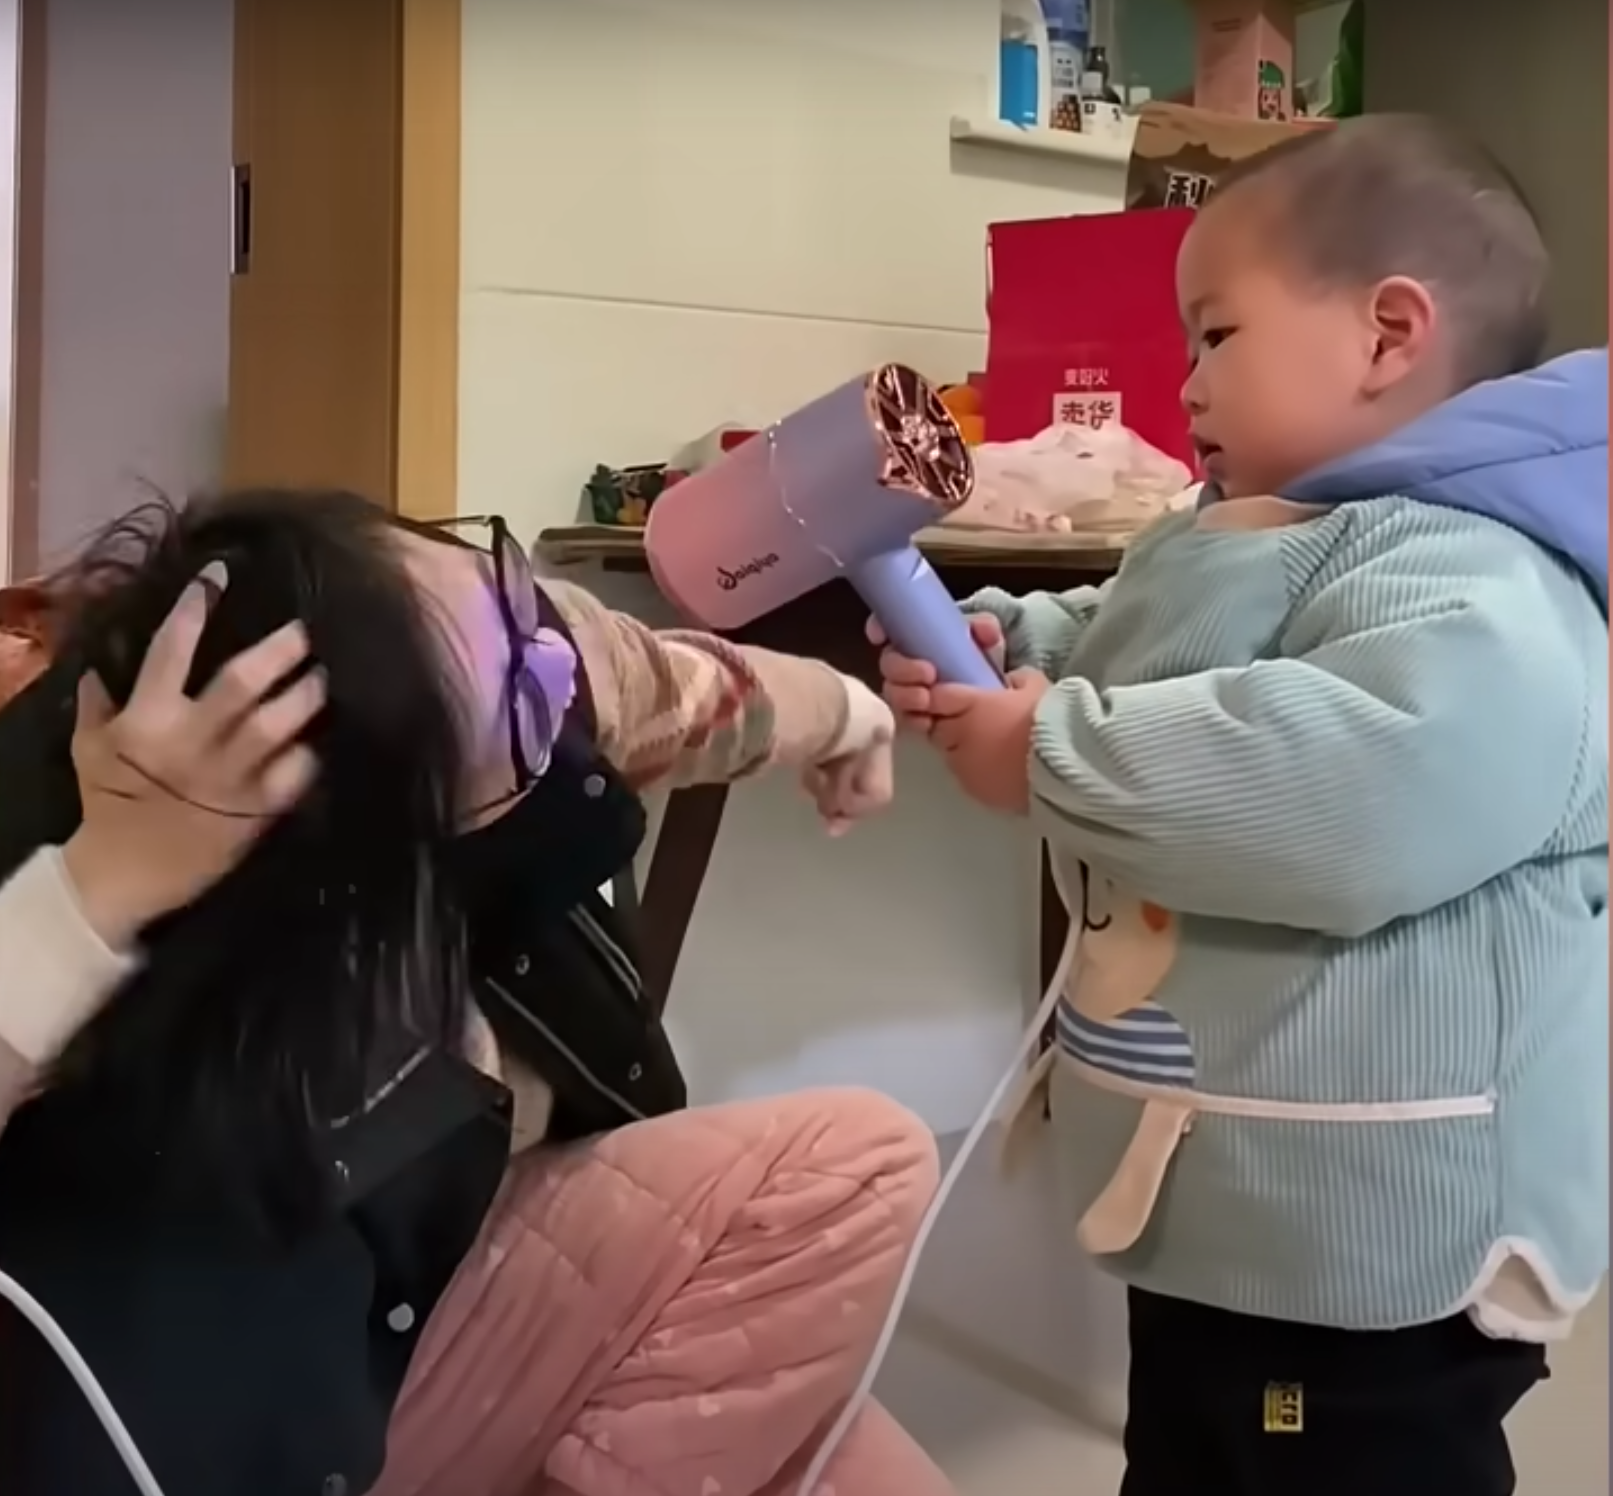 Pomelo ayuda a su madre a sujetar el secador de pelo. | Foto: Youtube.com/South China Morning Post